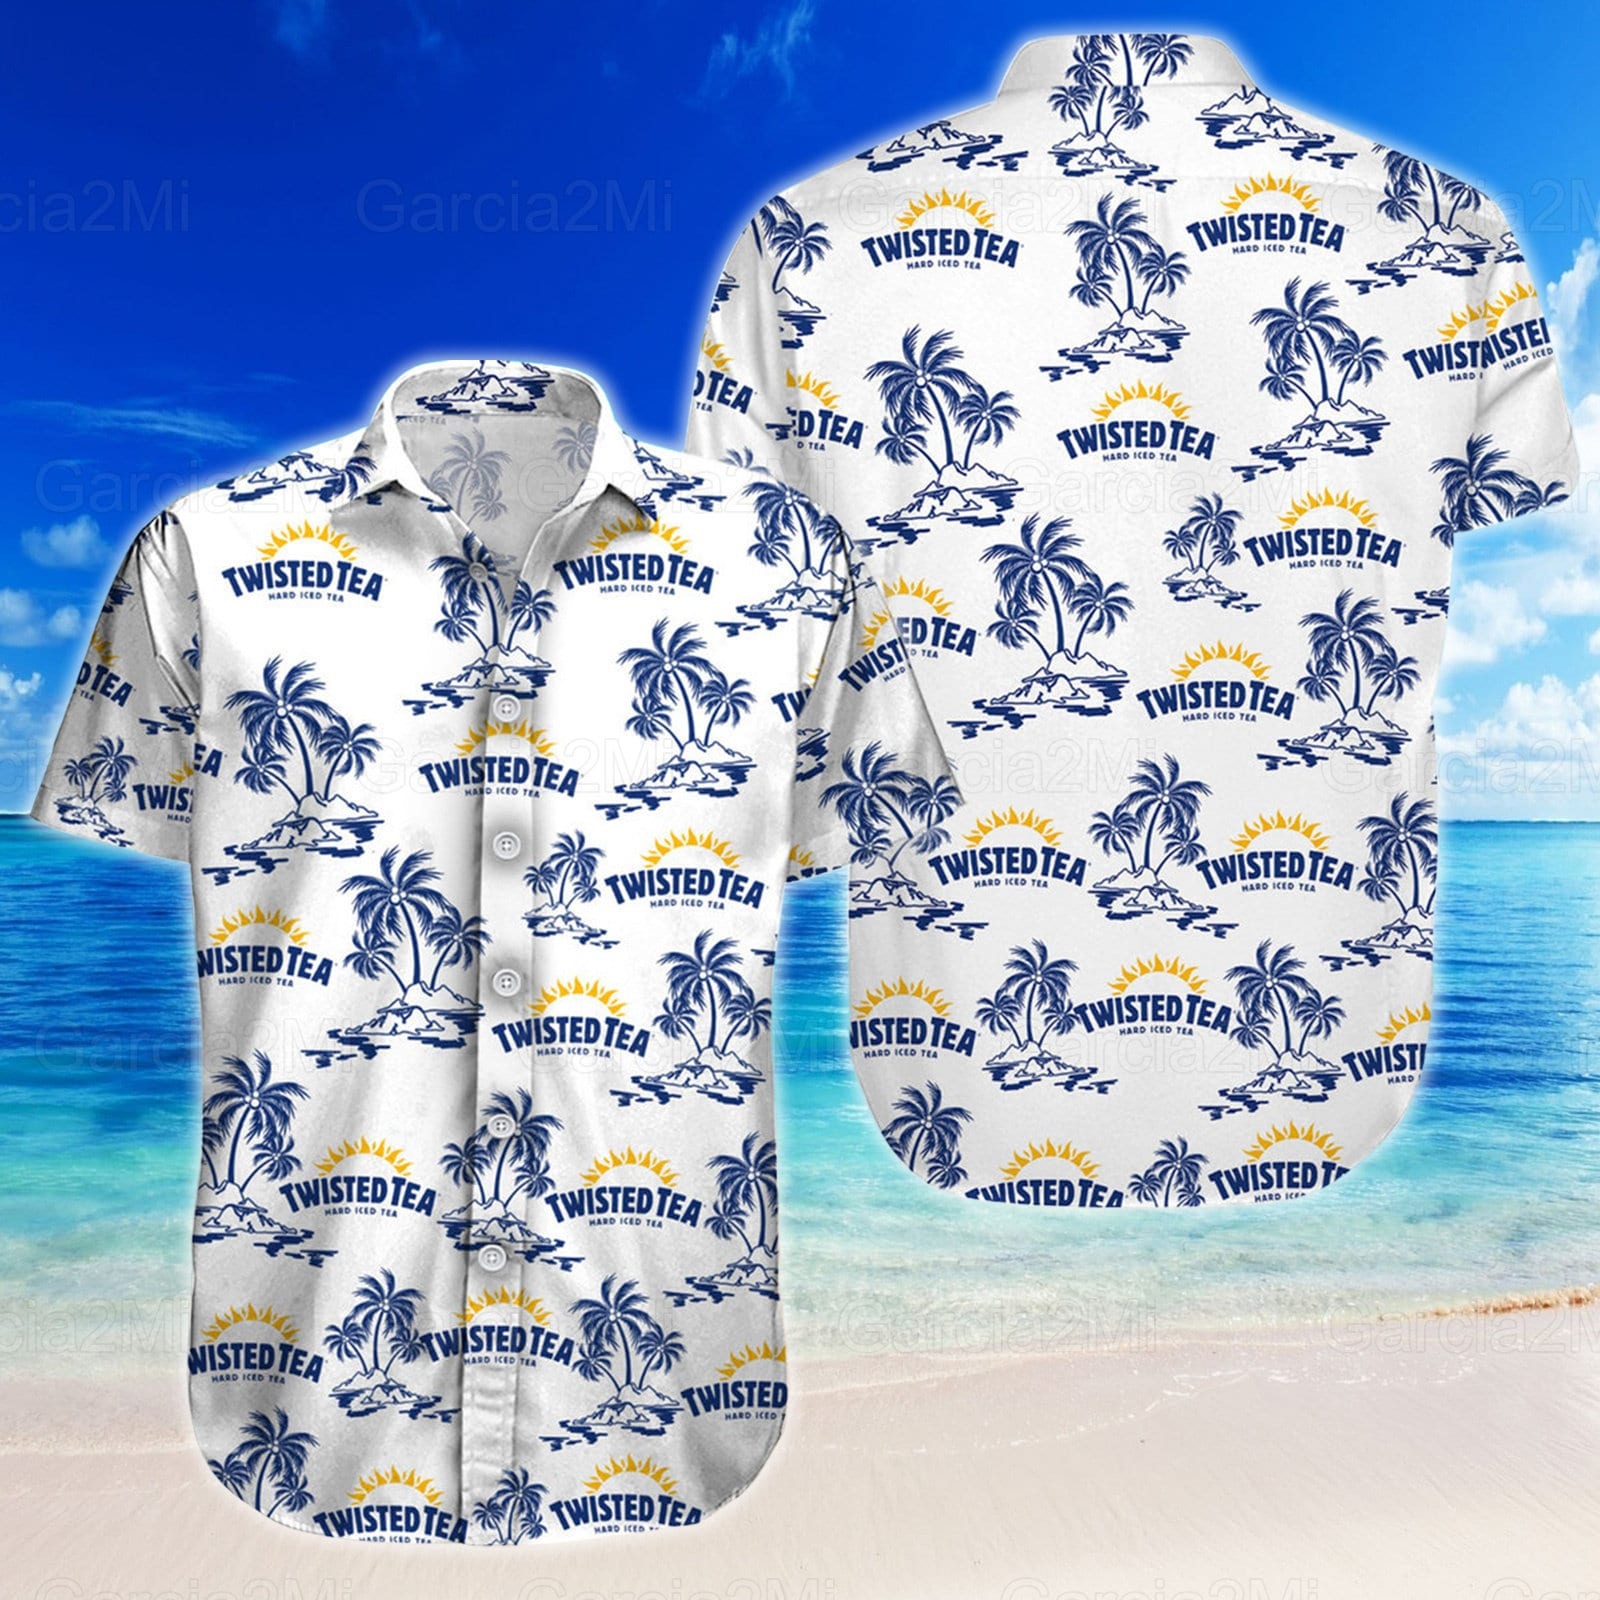 Twisted Tea Hawaiian Shirt, Twisted Tea Shirts For Men, Twisted Tea Lover, Twisted Tea Button Up Shirt